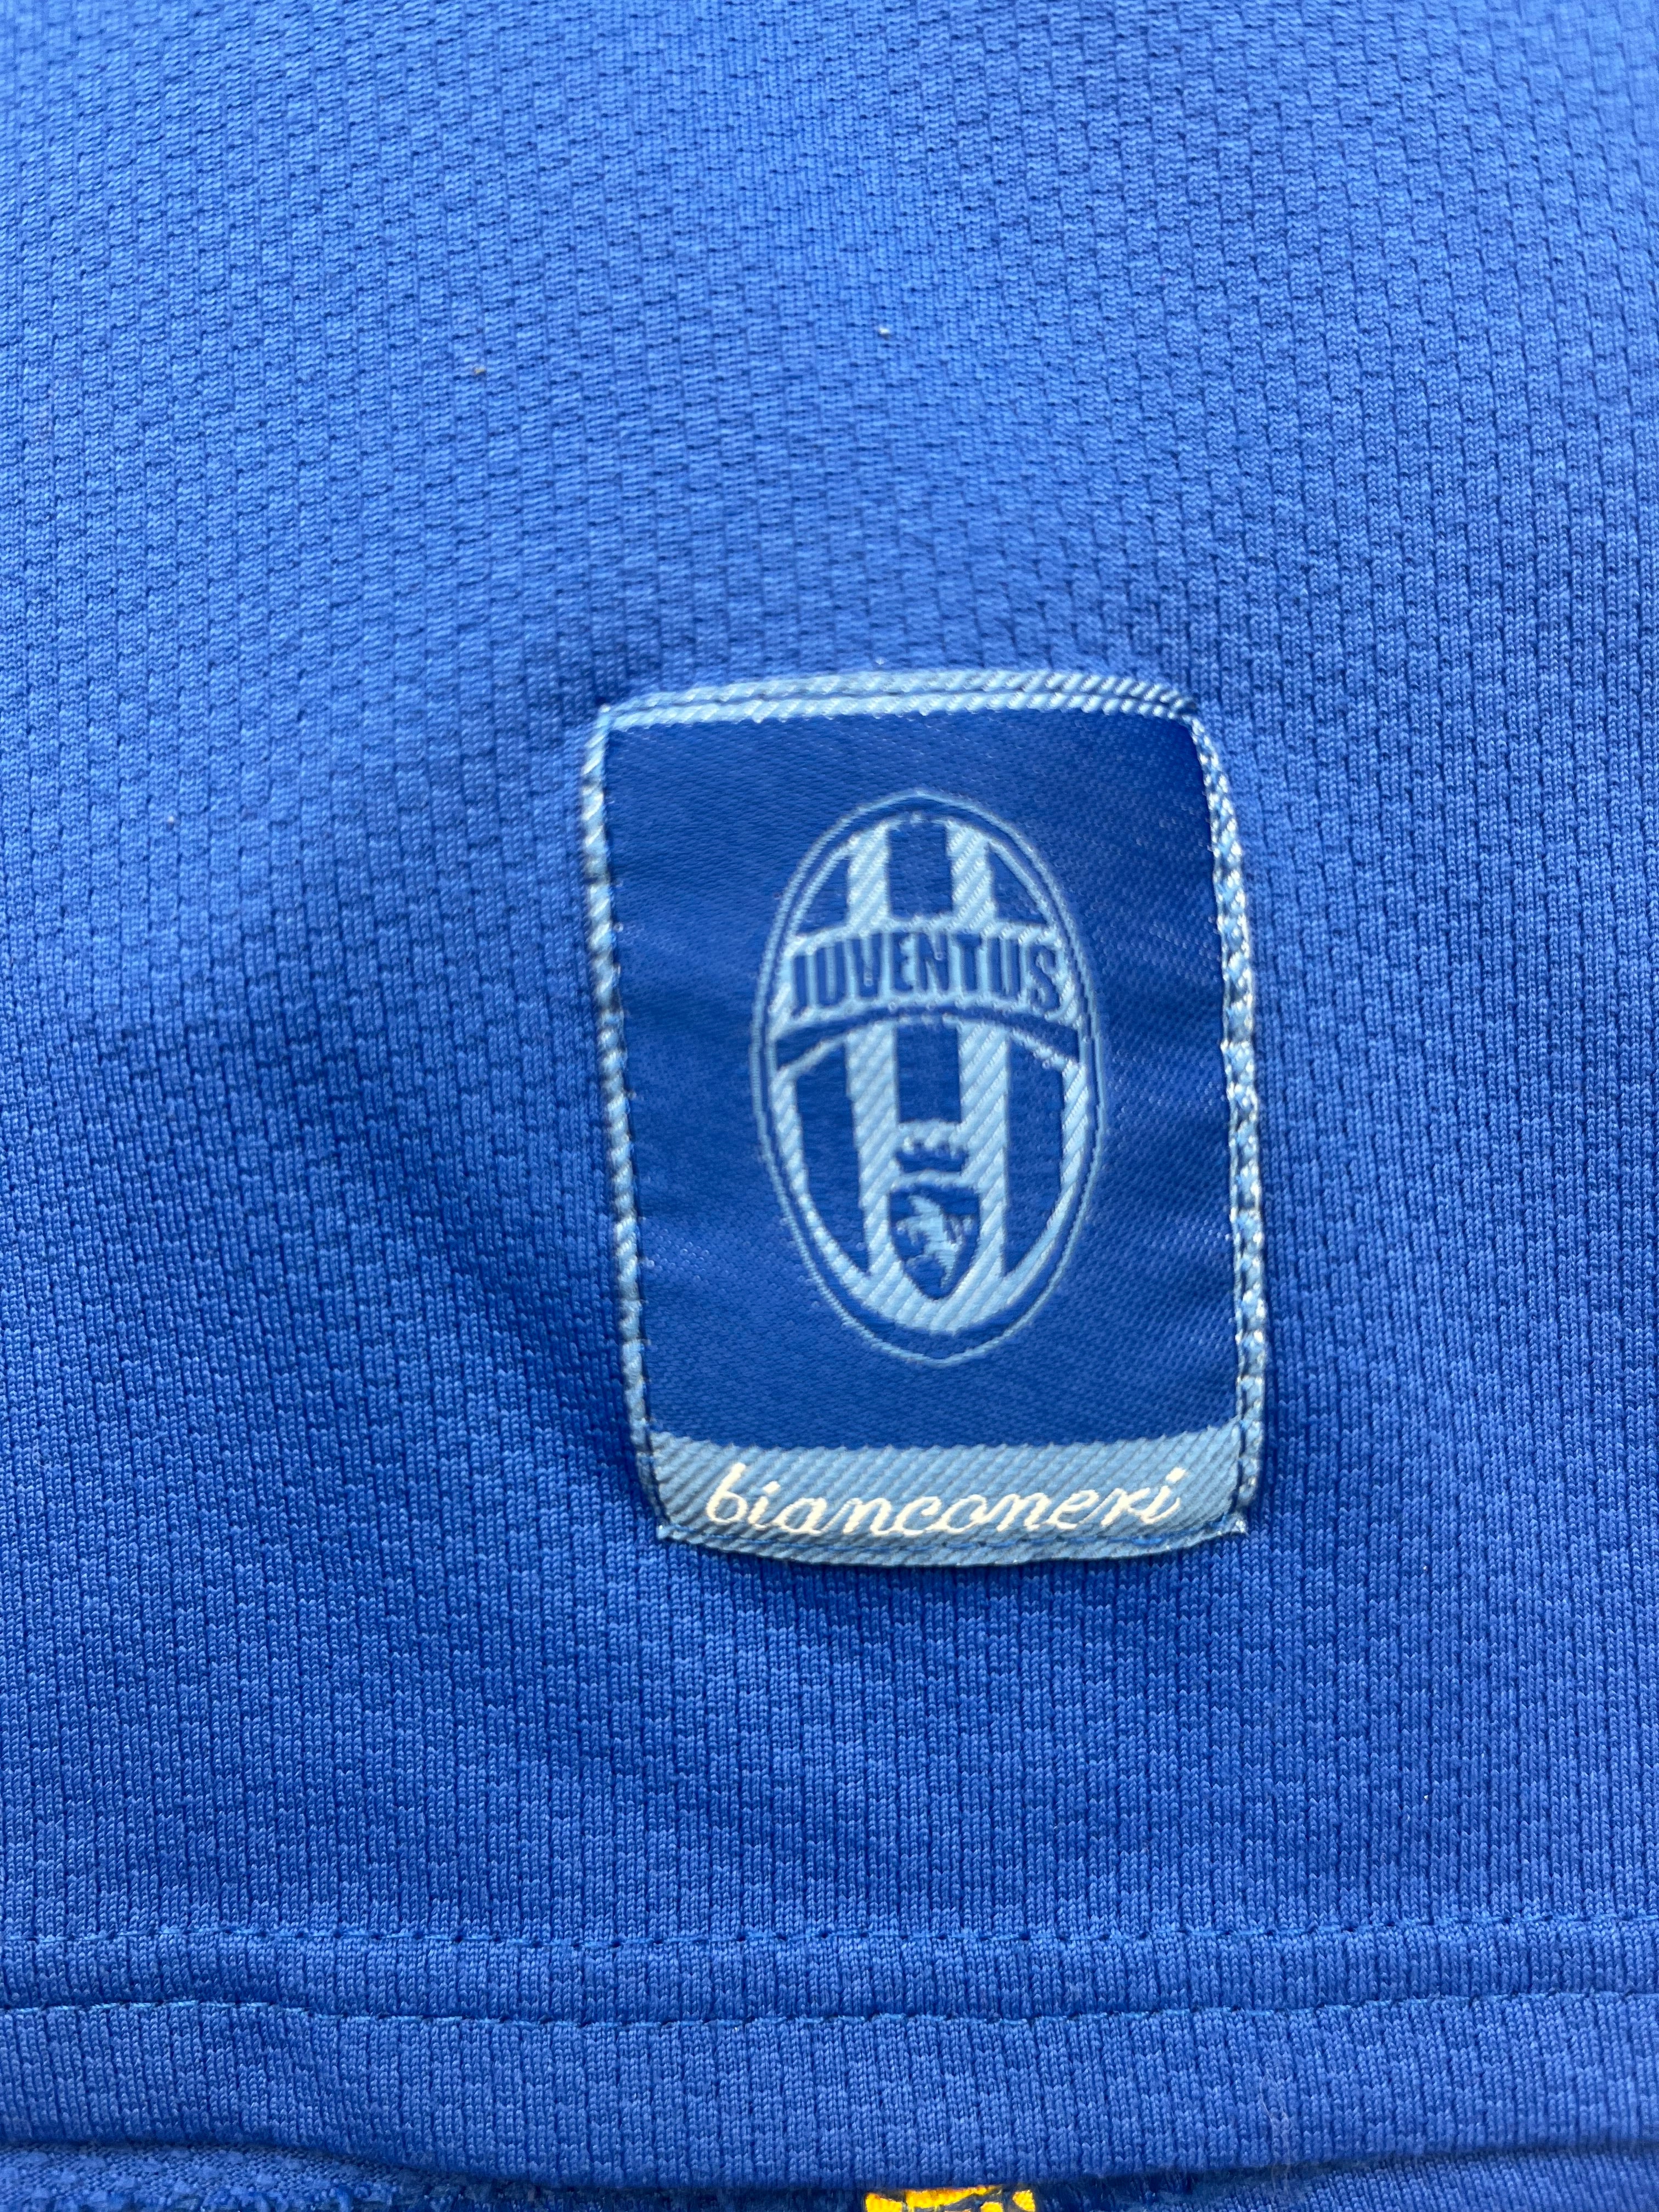 2007/08 Juventus Away Shirt (M) 9/10